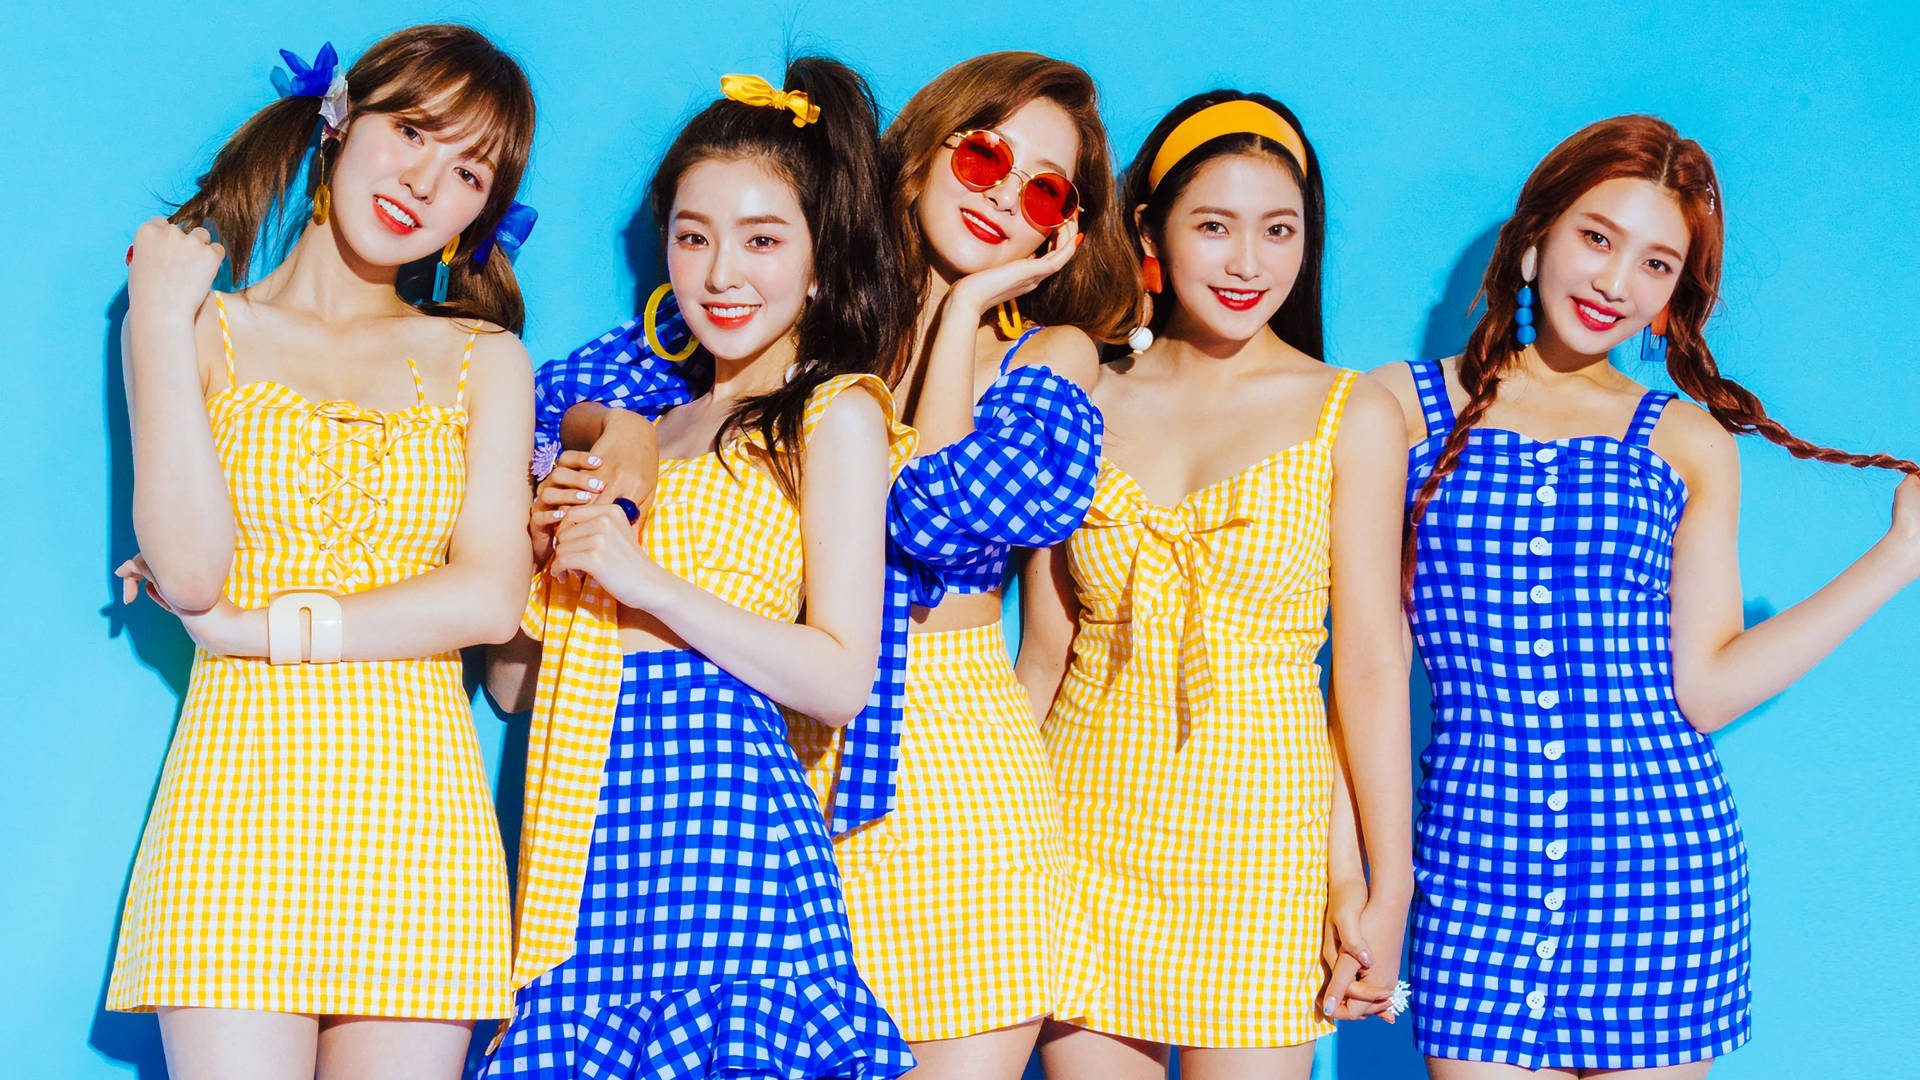 3840X2160 Red Velvet Wallpaper and Background